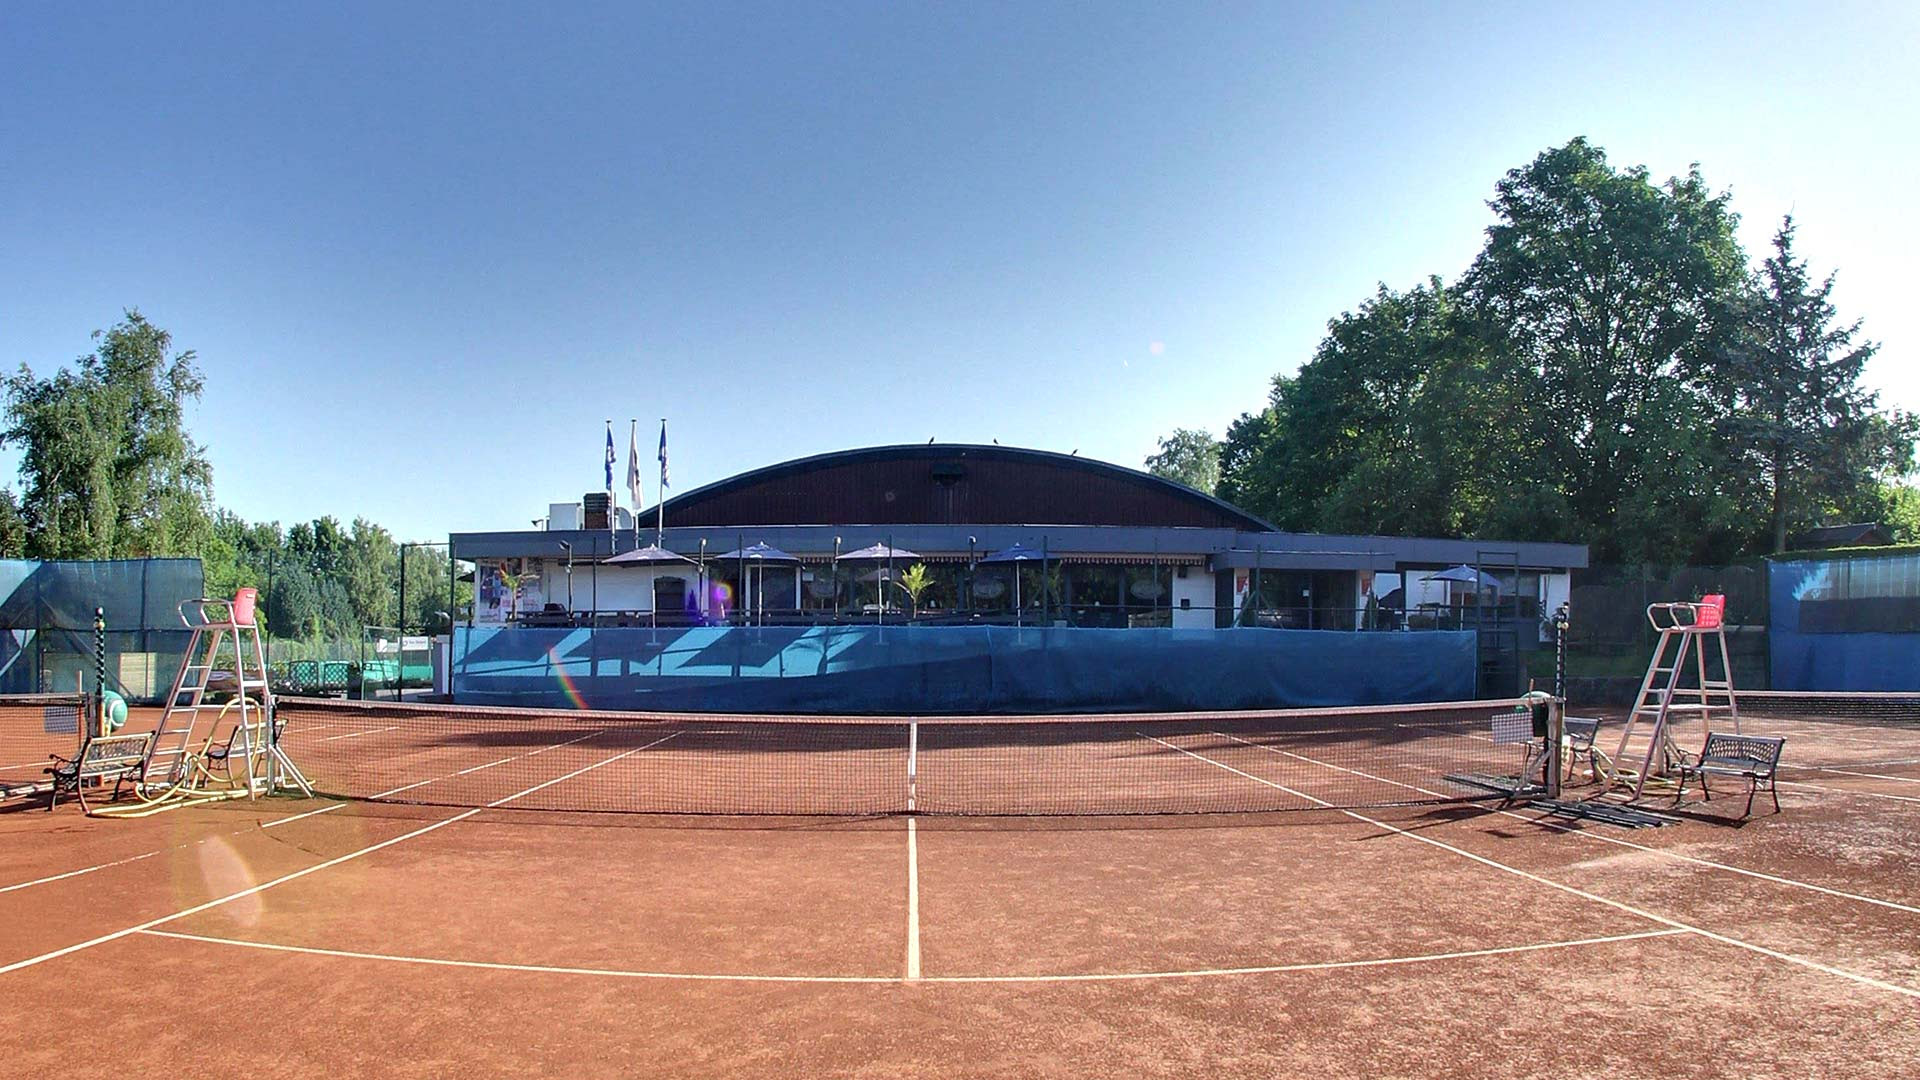 Foret Image: Club De Tennis Foret De Soignes